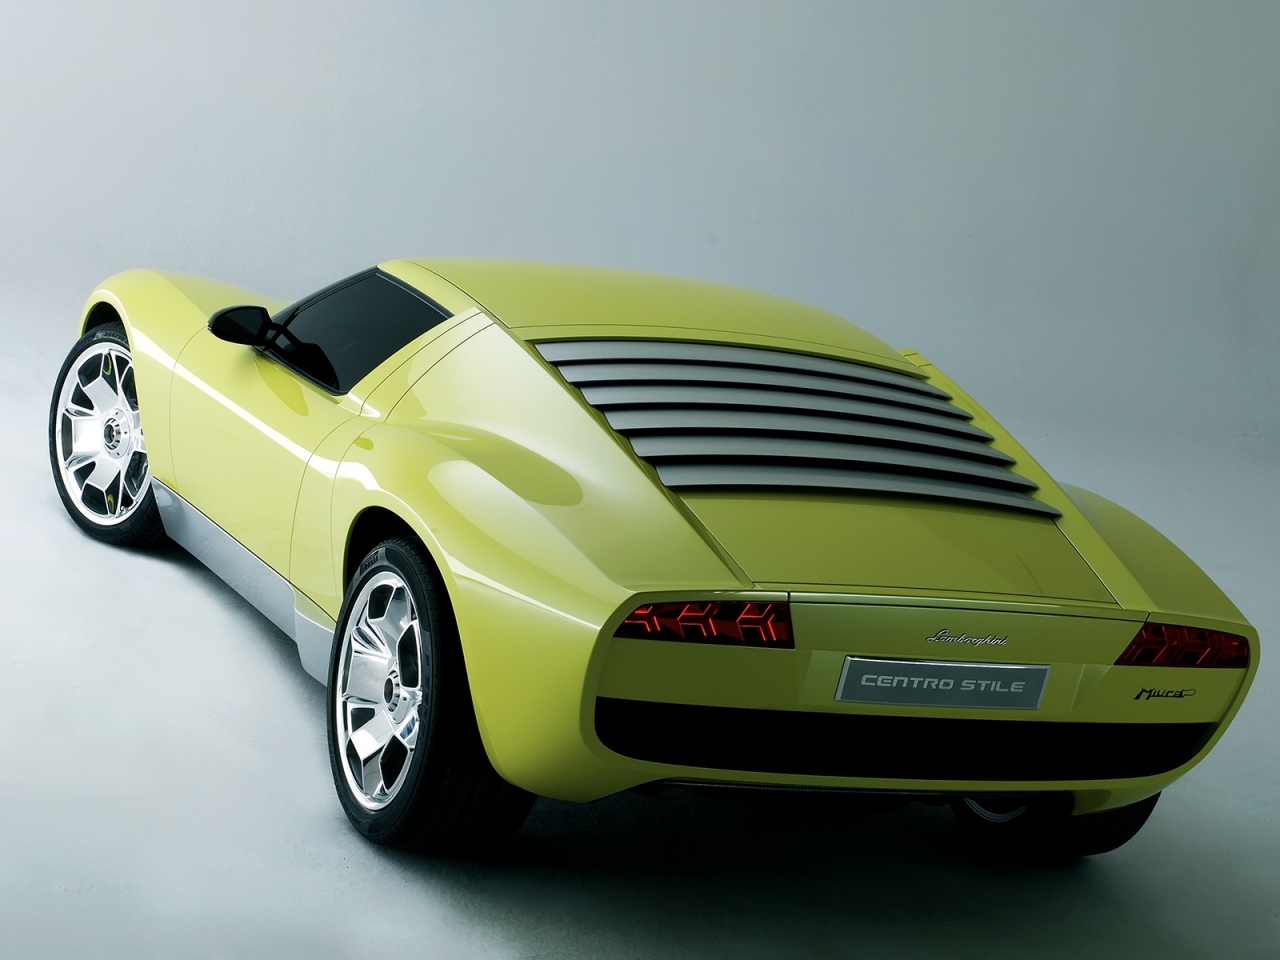 Lamborghini Miura Concept Rear for 1280 x 960 resolution